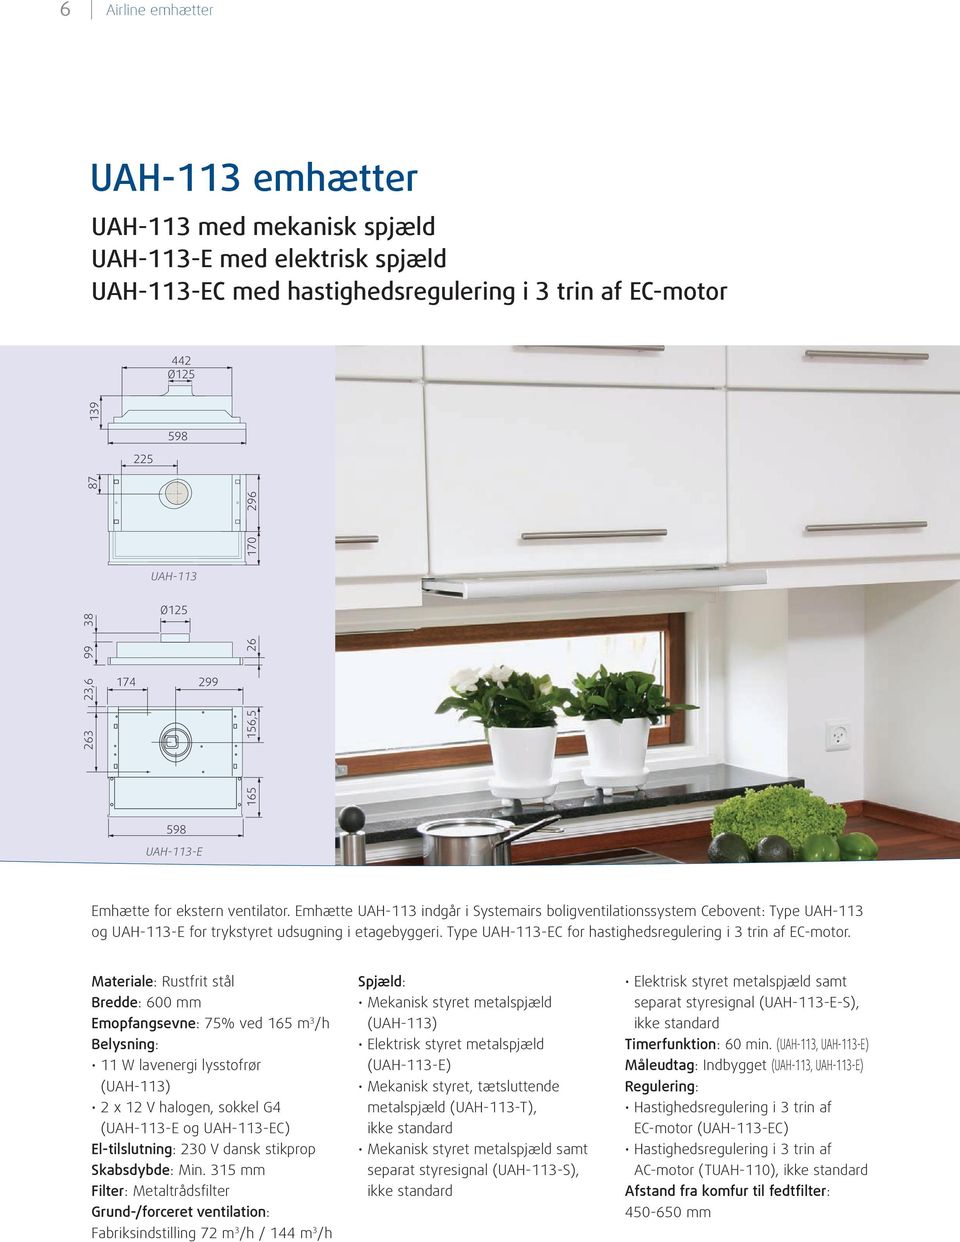 Emhætte UAH-113 indgår i Systemairs bolig ventilationssystem Cebovent: Type UAH-113 og UAH-113-E for trykstyret udsugning i etagebyggeri. Type UAH-113-EC for hastighedsregulering i 3 trin af EC-motor.